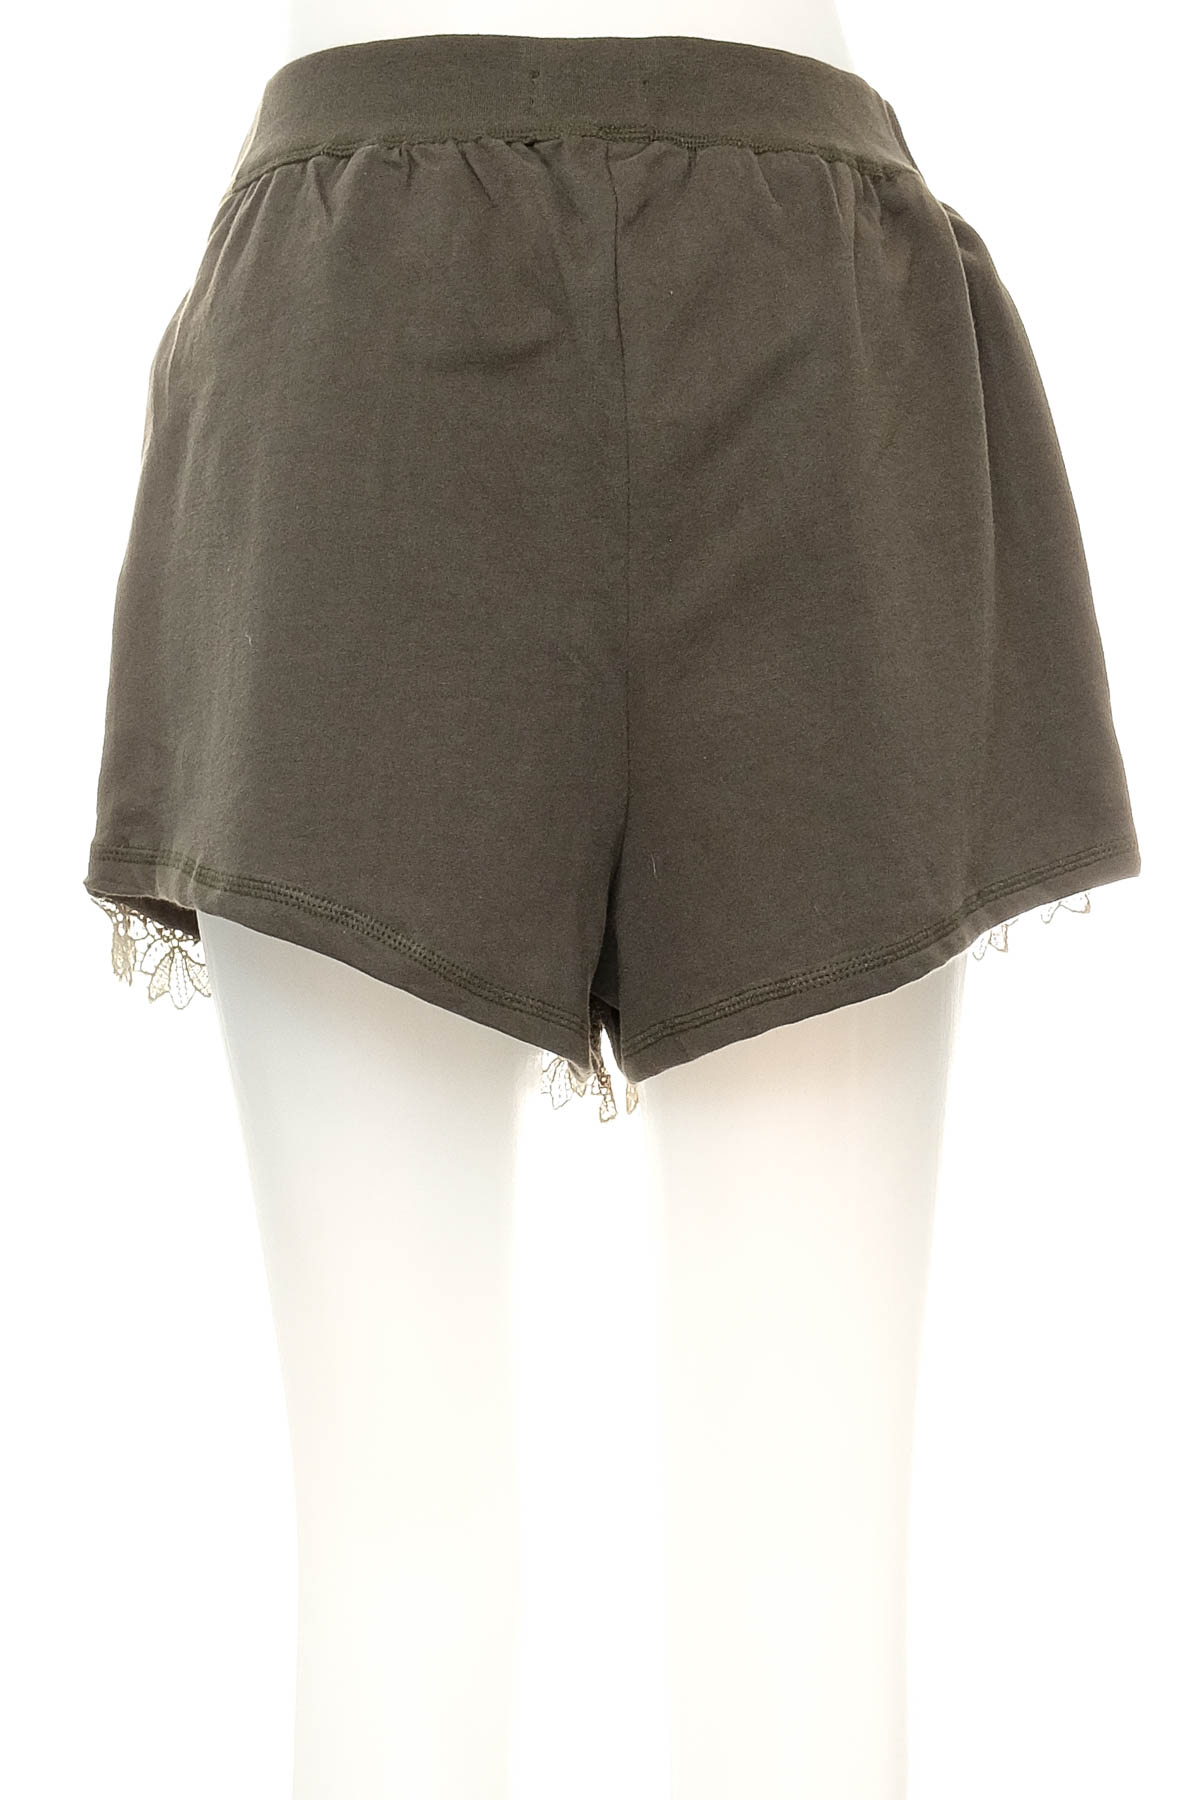 Female shorts - B. Loved - 1